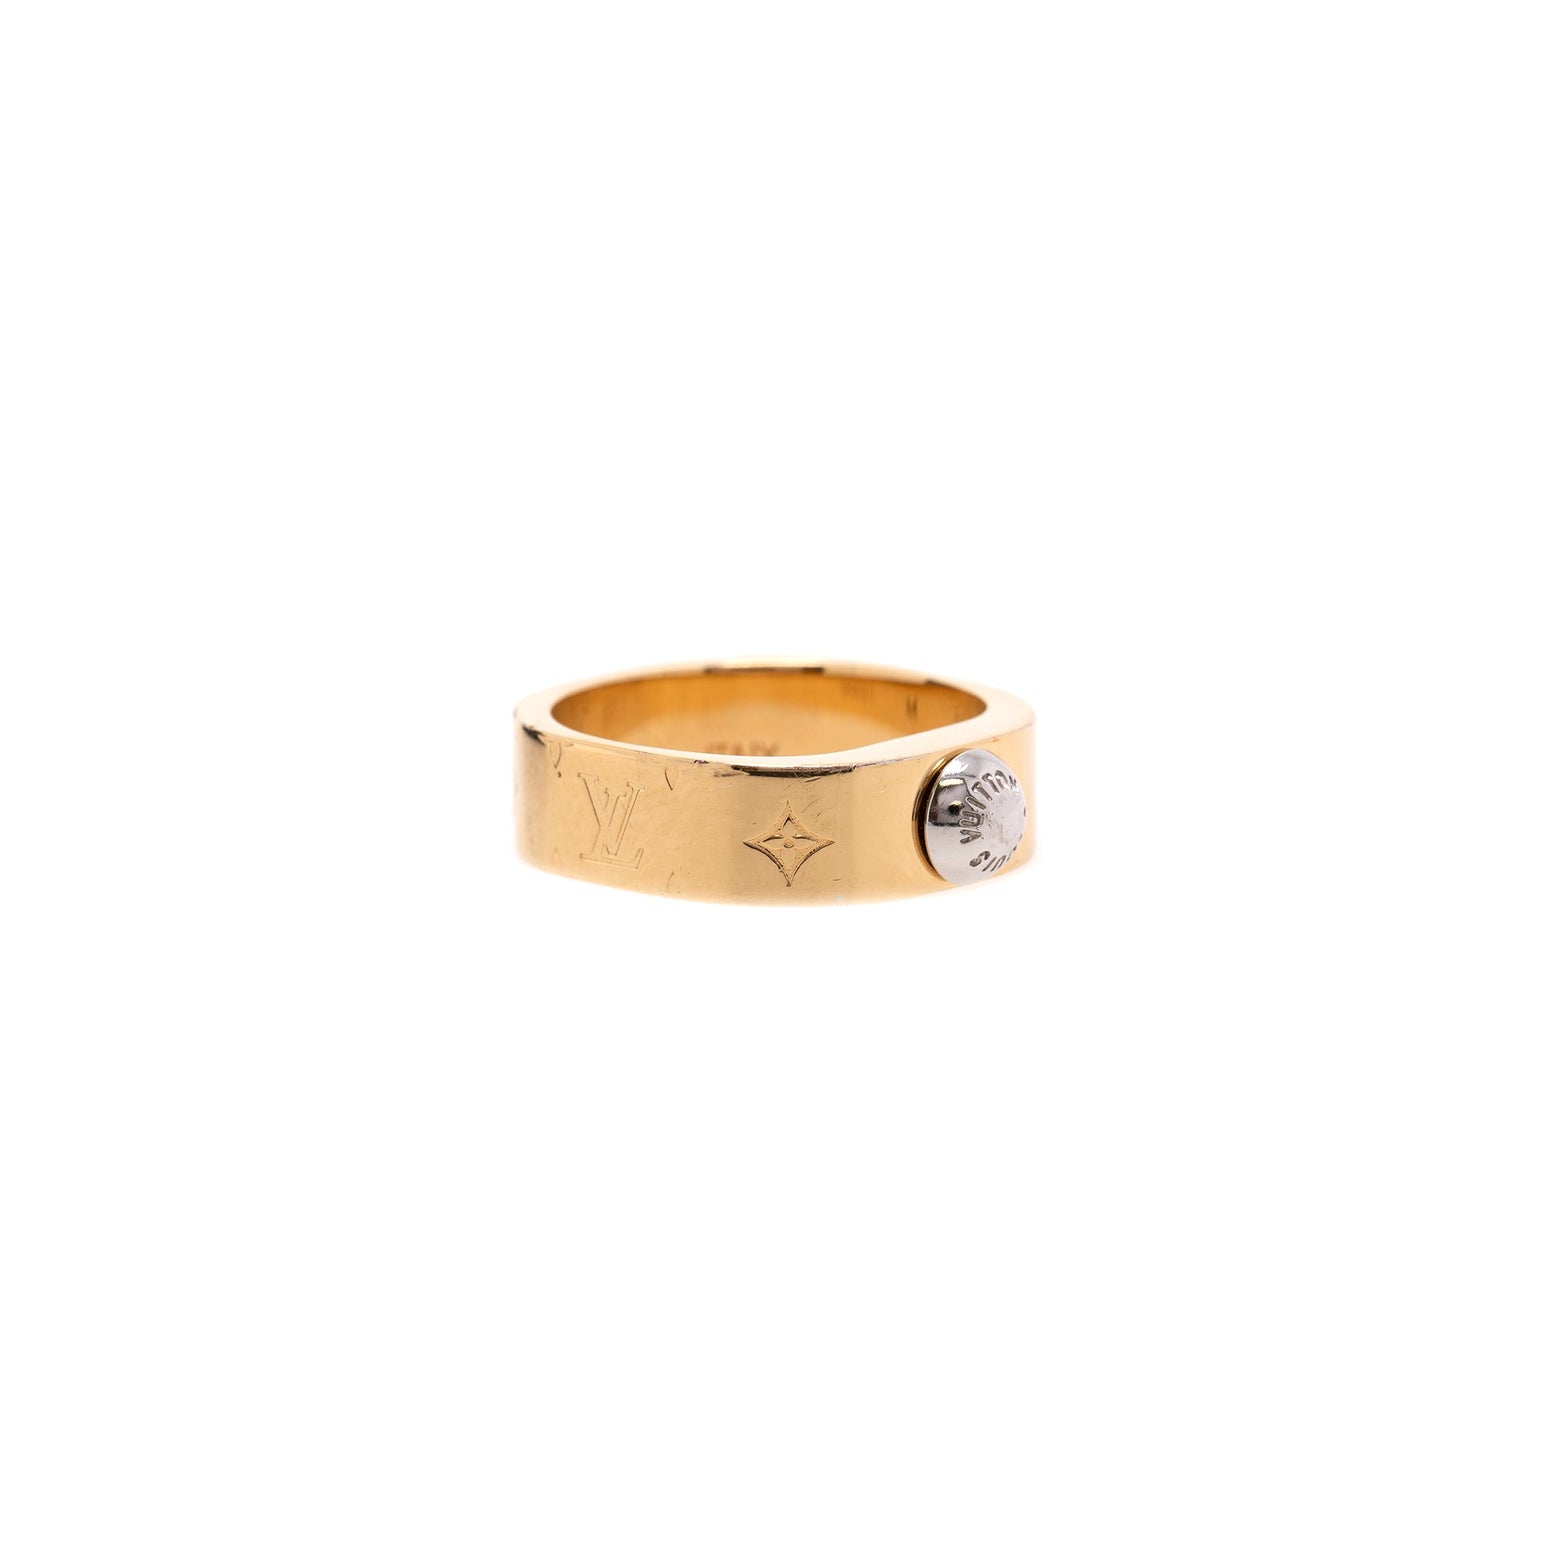 Nanogram ring Louis Vuitton Gold size 6 US in Metal - 32651522